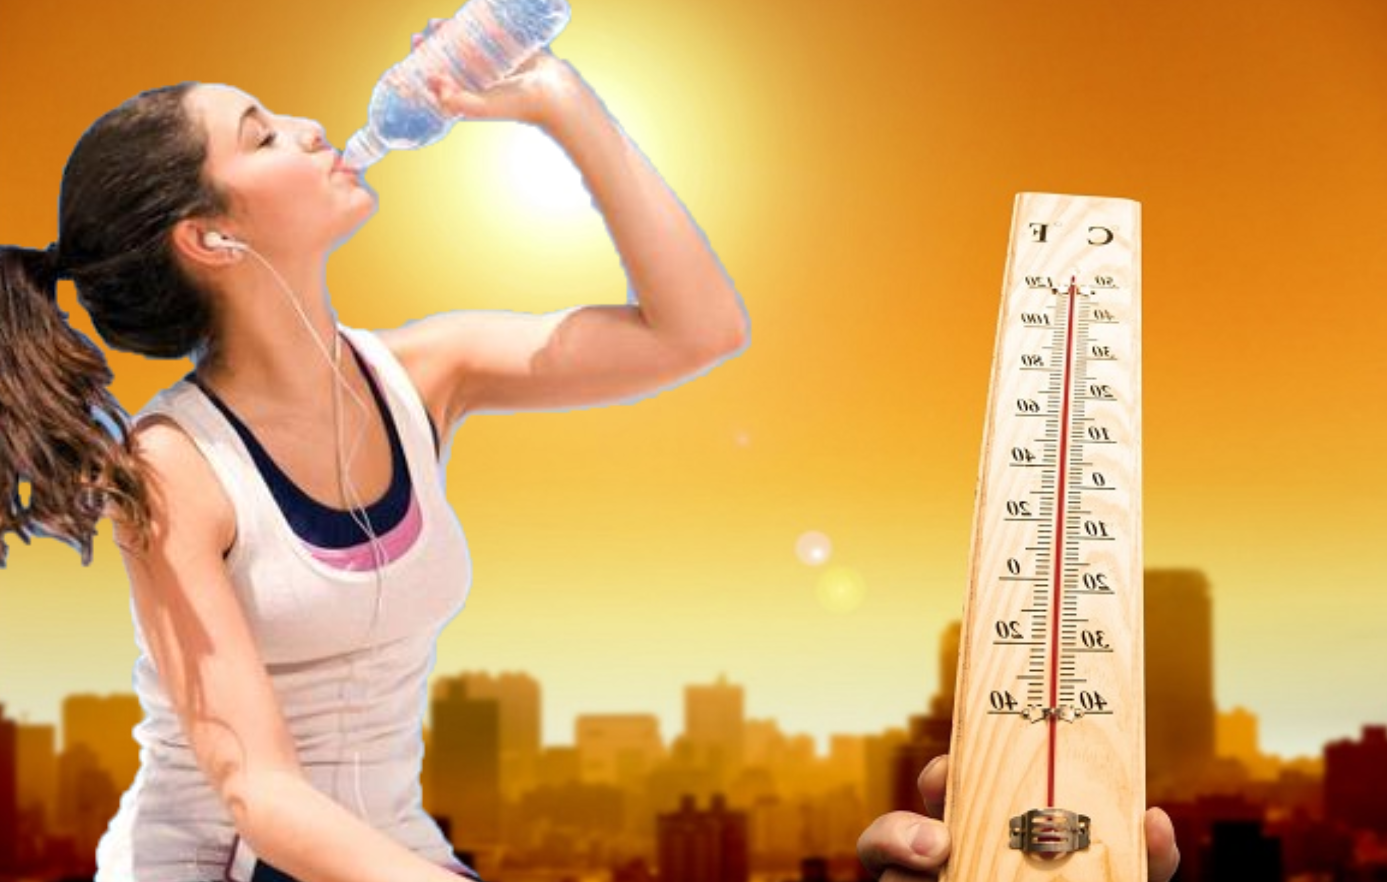  Đảm bảo uống đủ nước vào những ngày nắng nóng